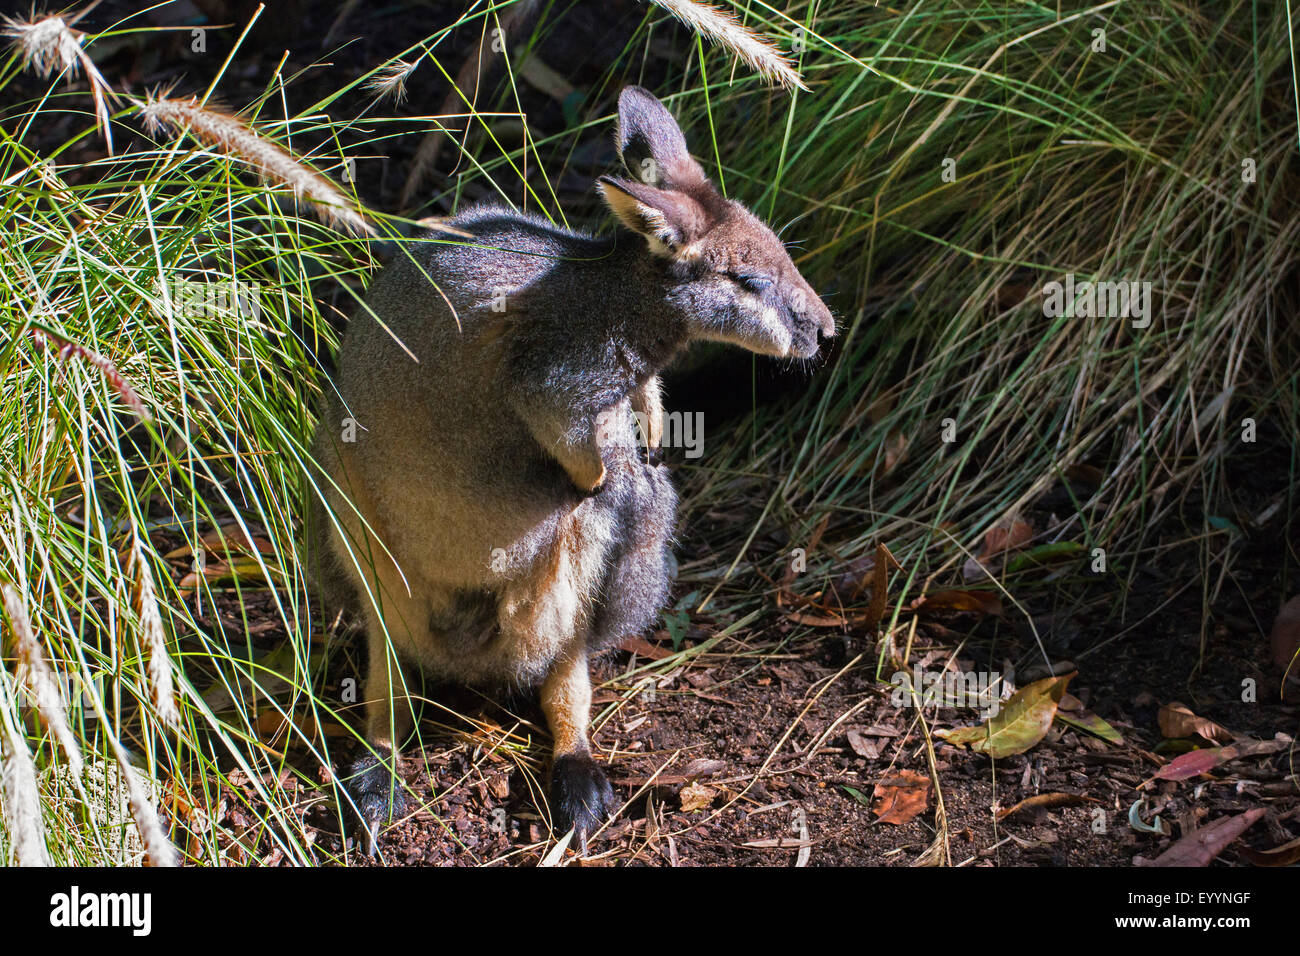 Wallaby tammar, dama wallaby (Macropus eugenii), prend soin de sa fourrure, de l'Australie, l'Australie Occidentale Banque D'Images